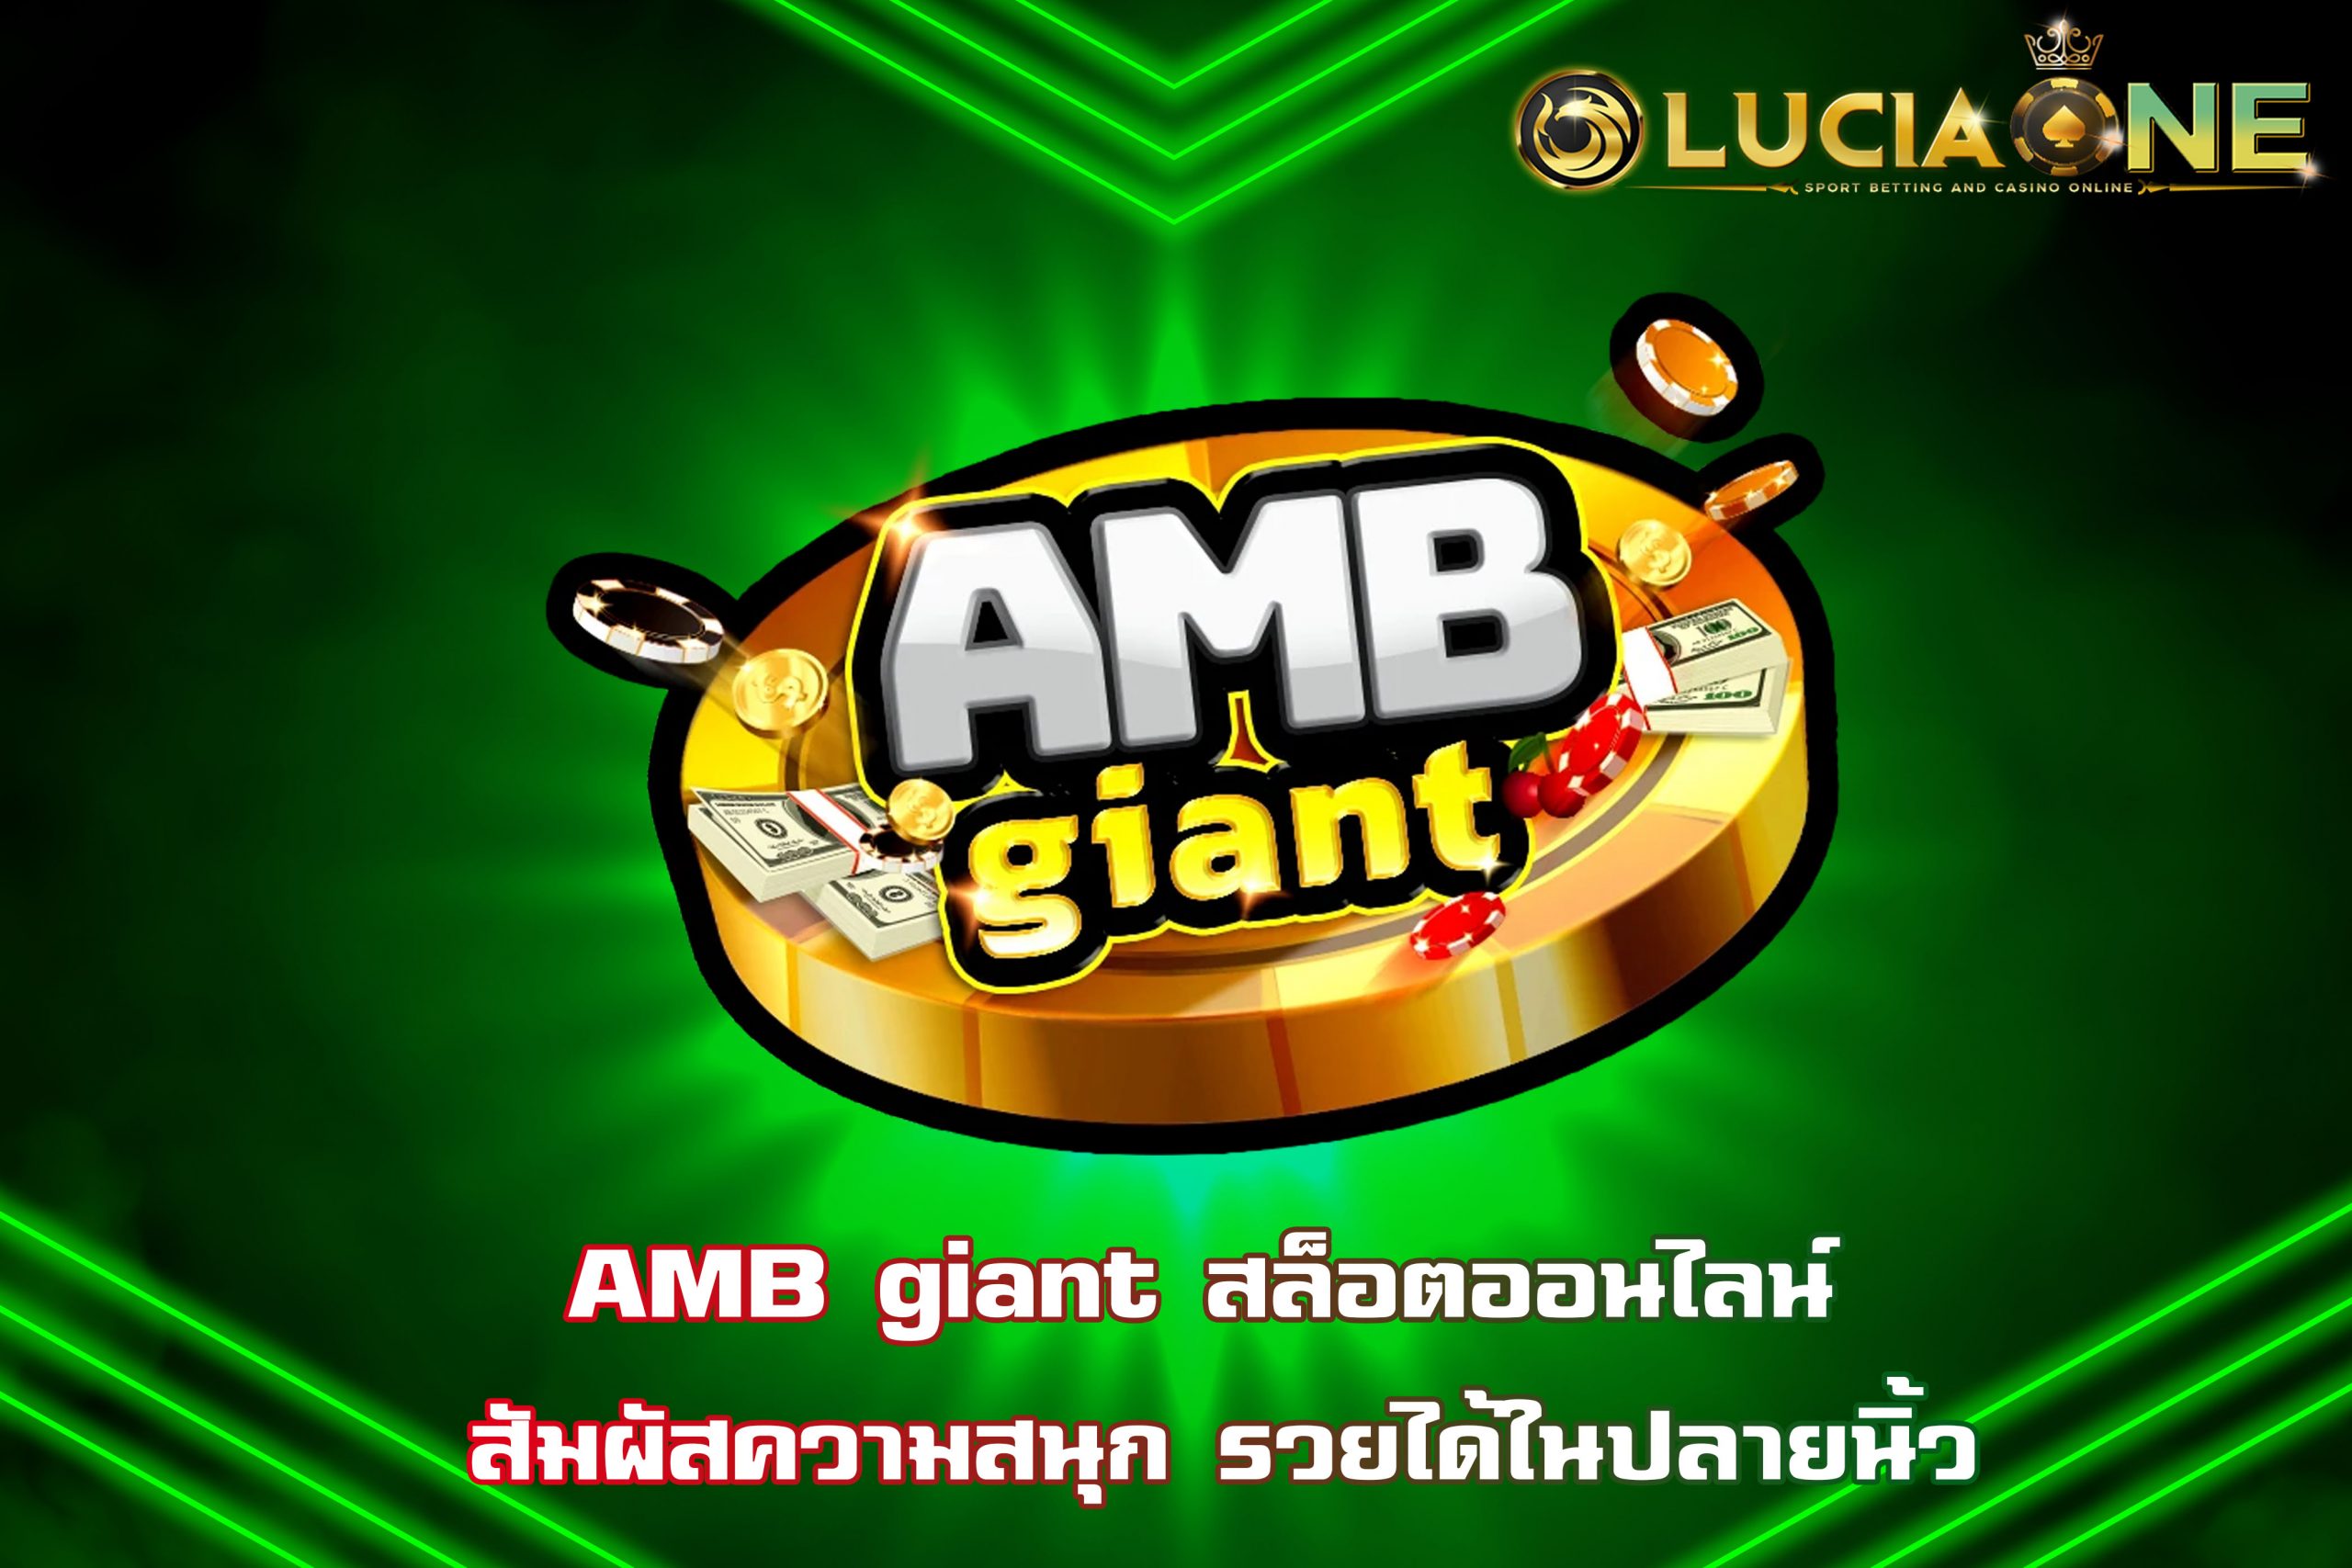 AMB giant